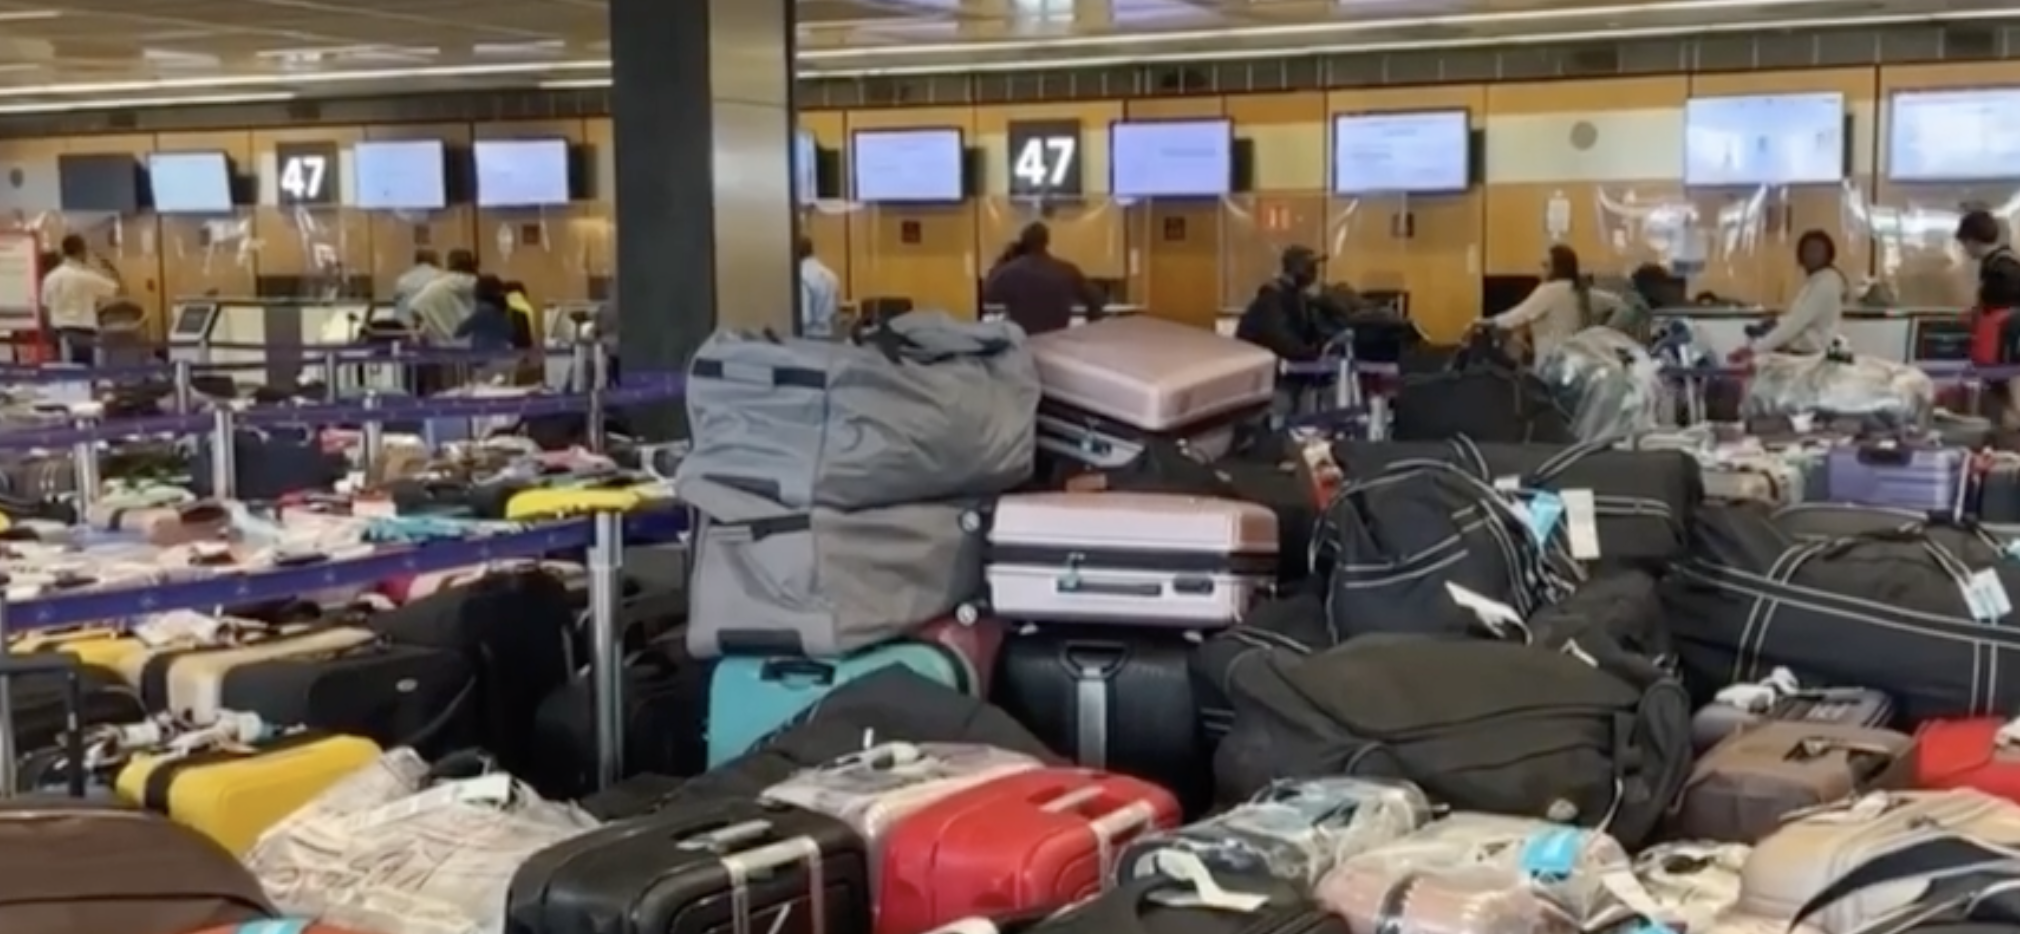     Panne à l'aéroport d'Orly : Air Caraïbes va demander des indemnisations au gestionnaire ADP

